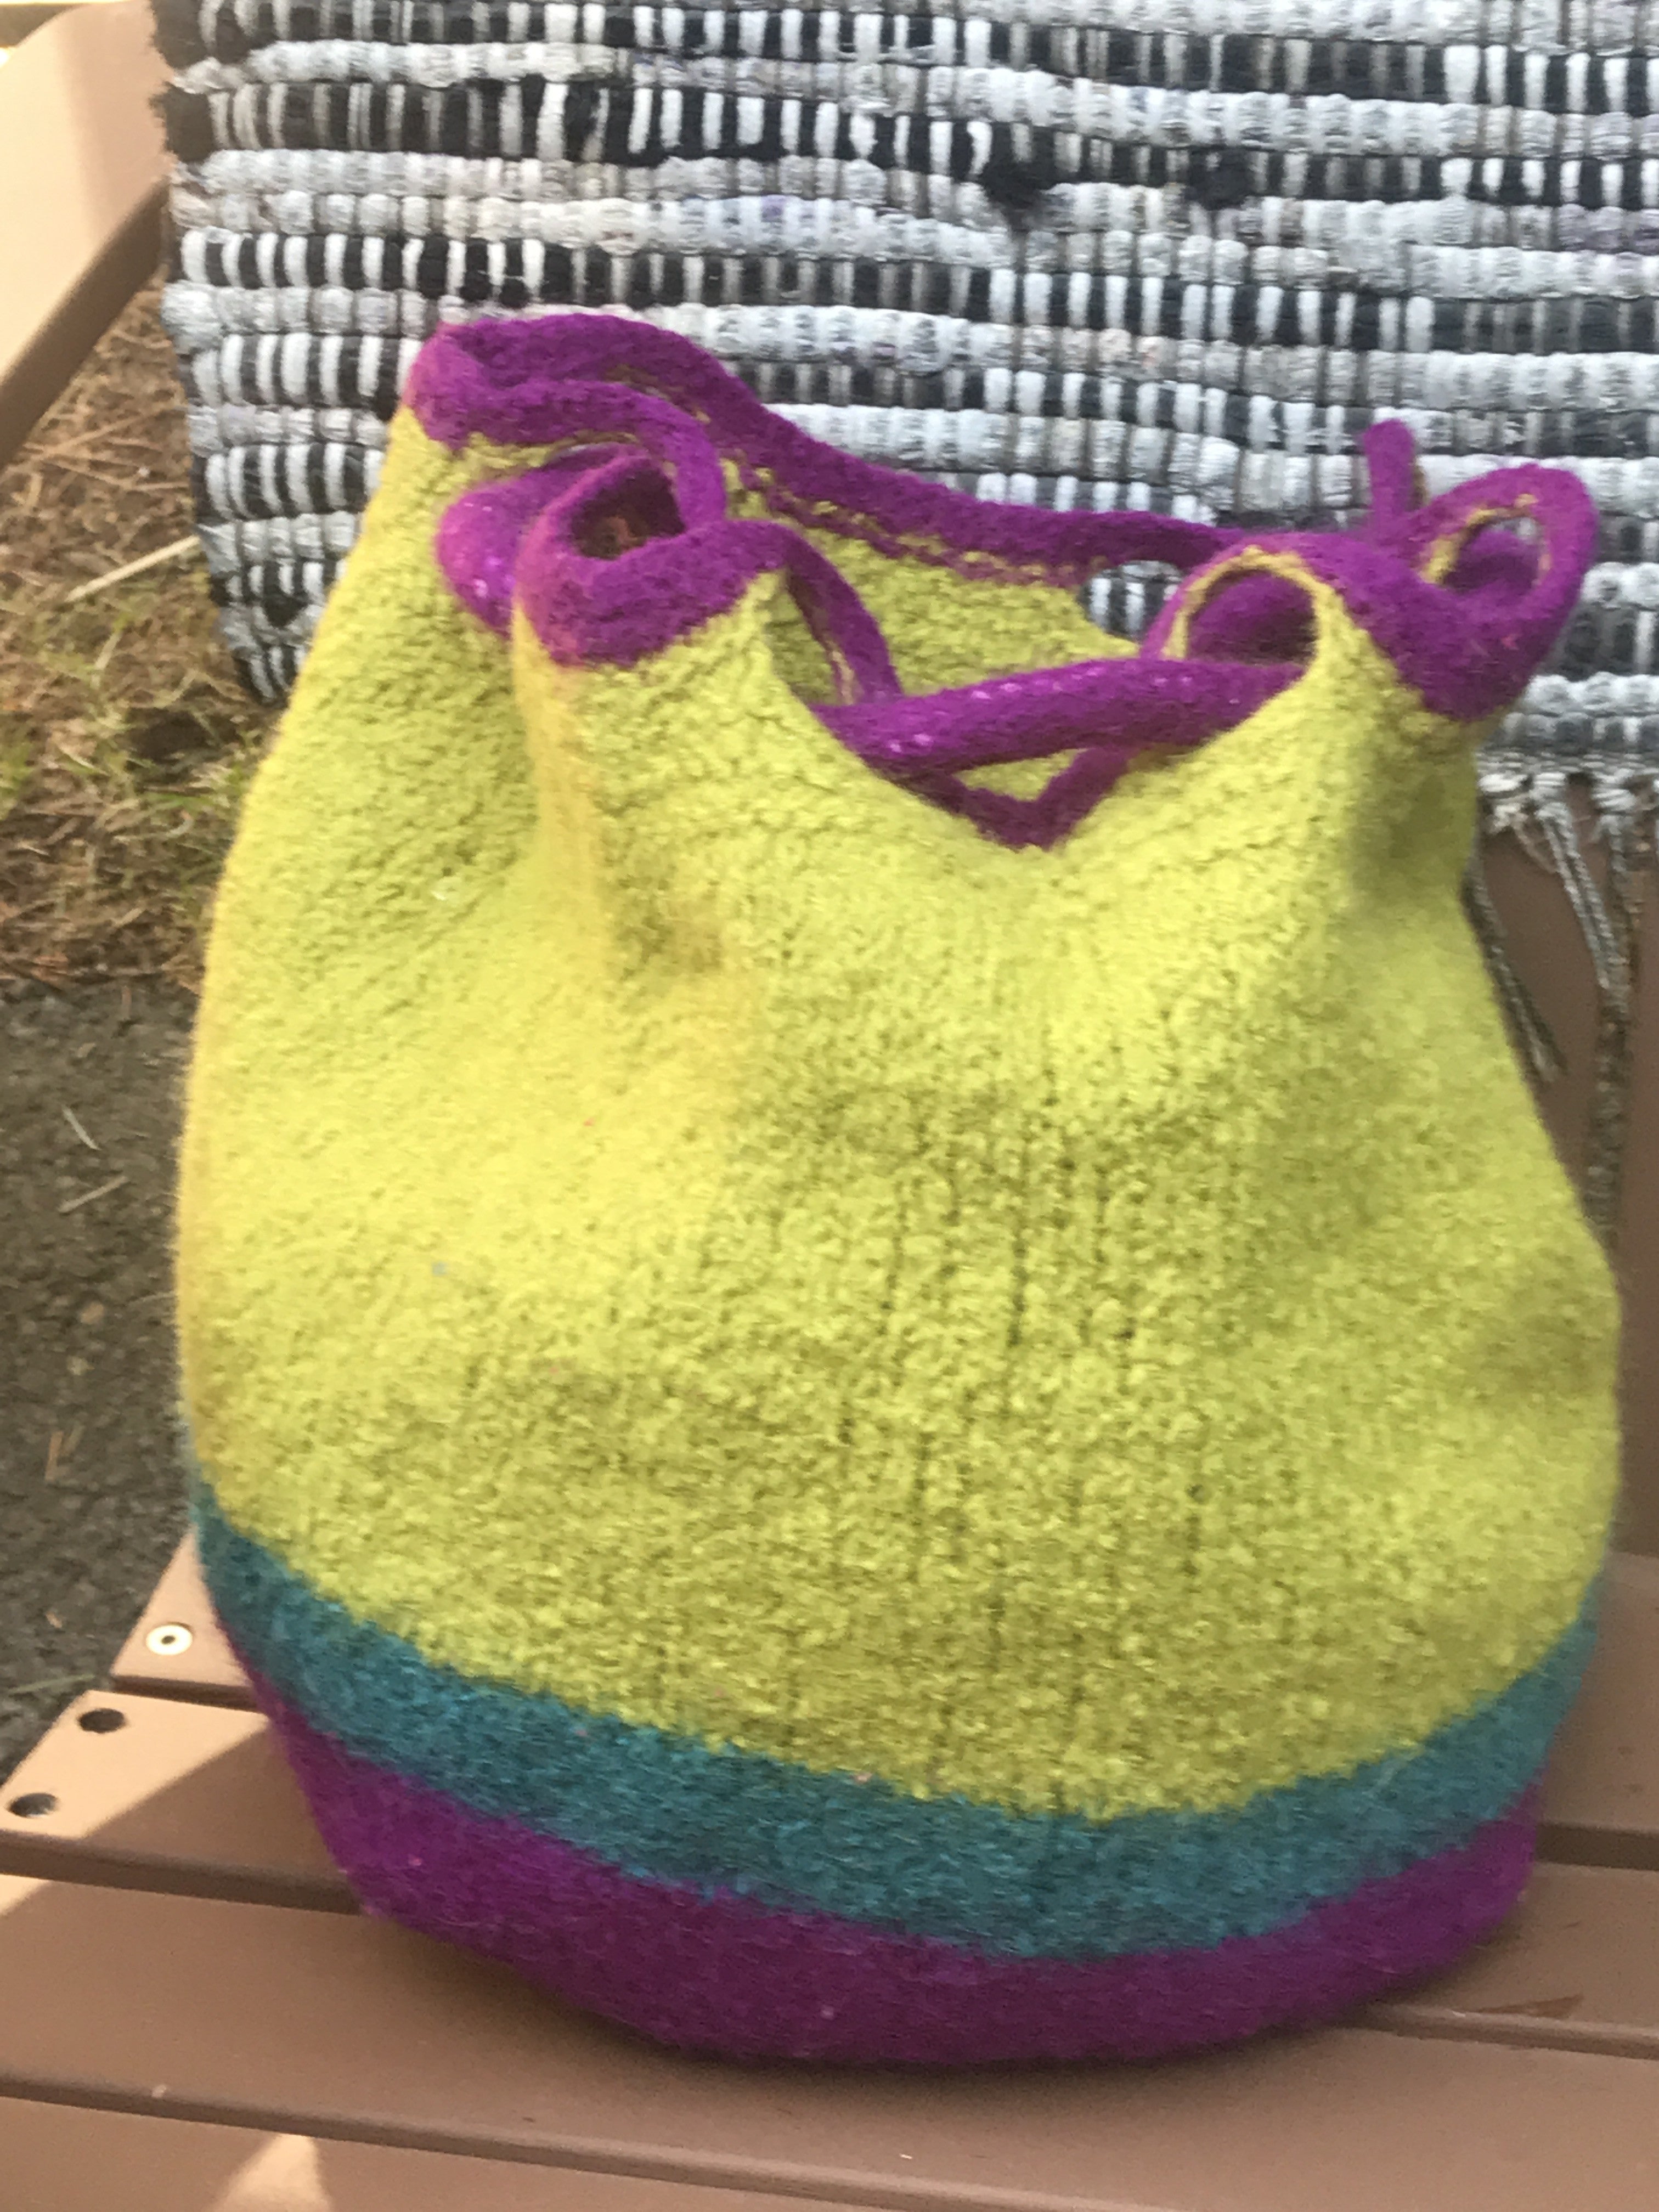 Crochet purple Bag Crochet pattern by Crafting Wheel